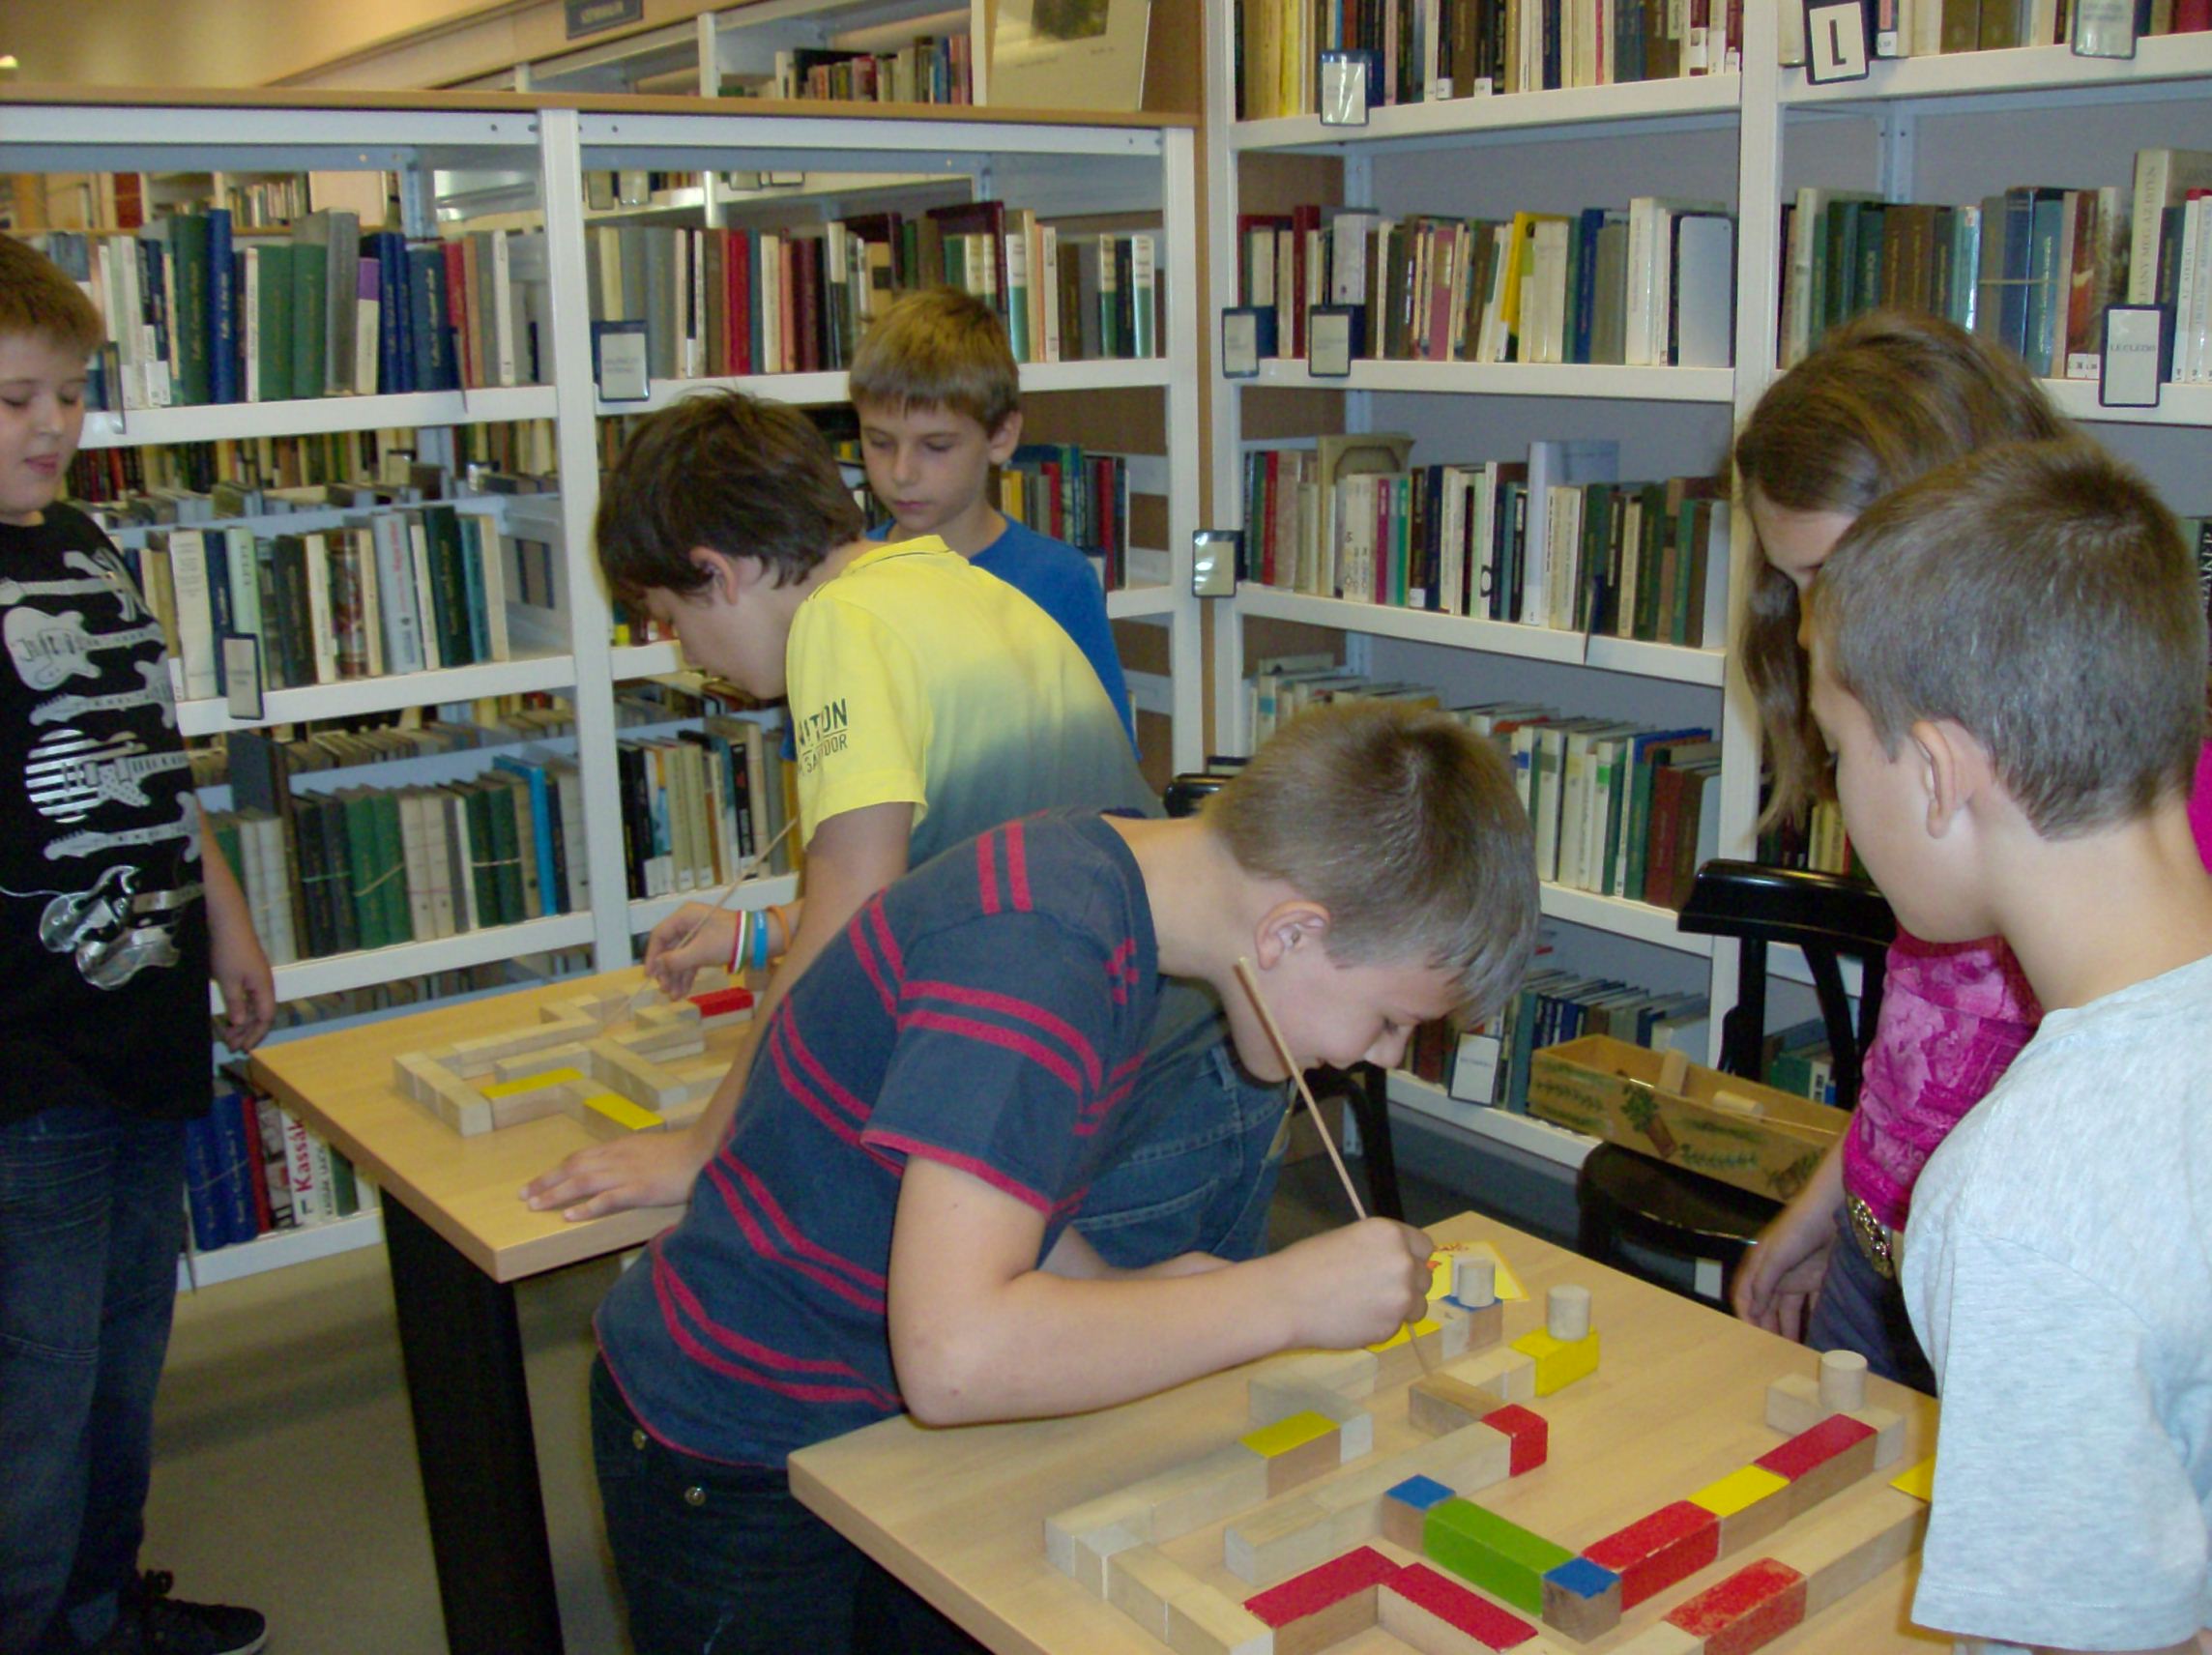 Gyerekek labirintus játékkal versenyeznek